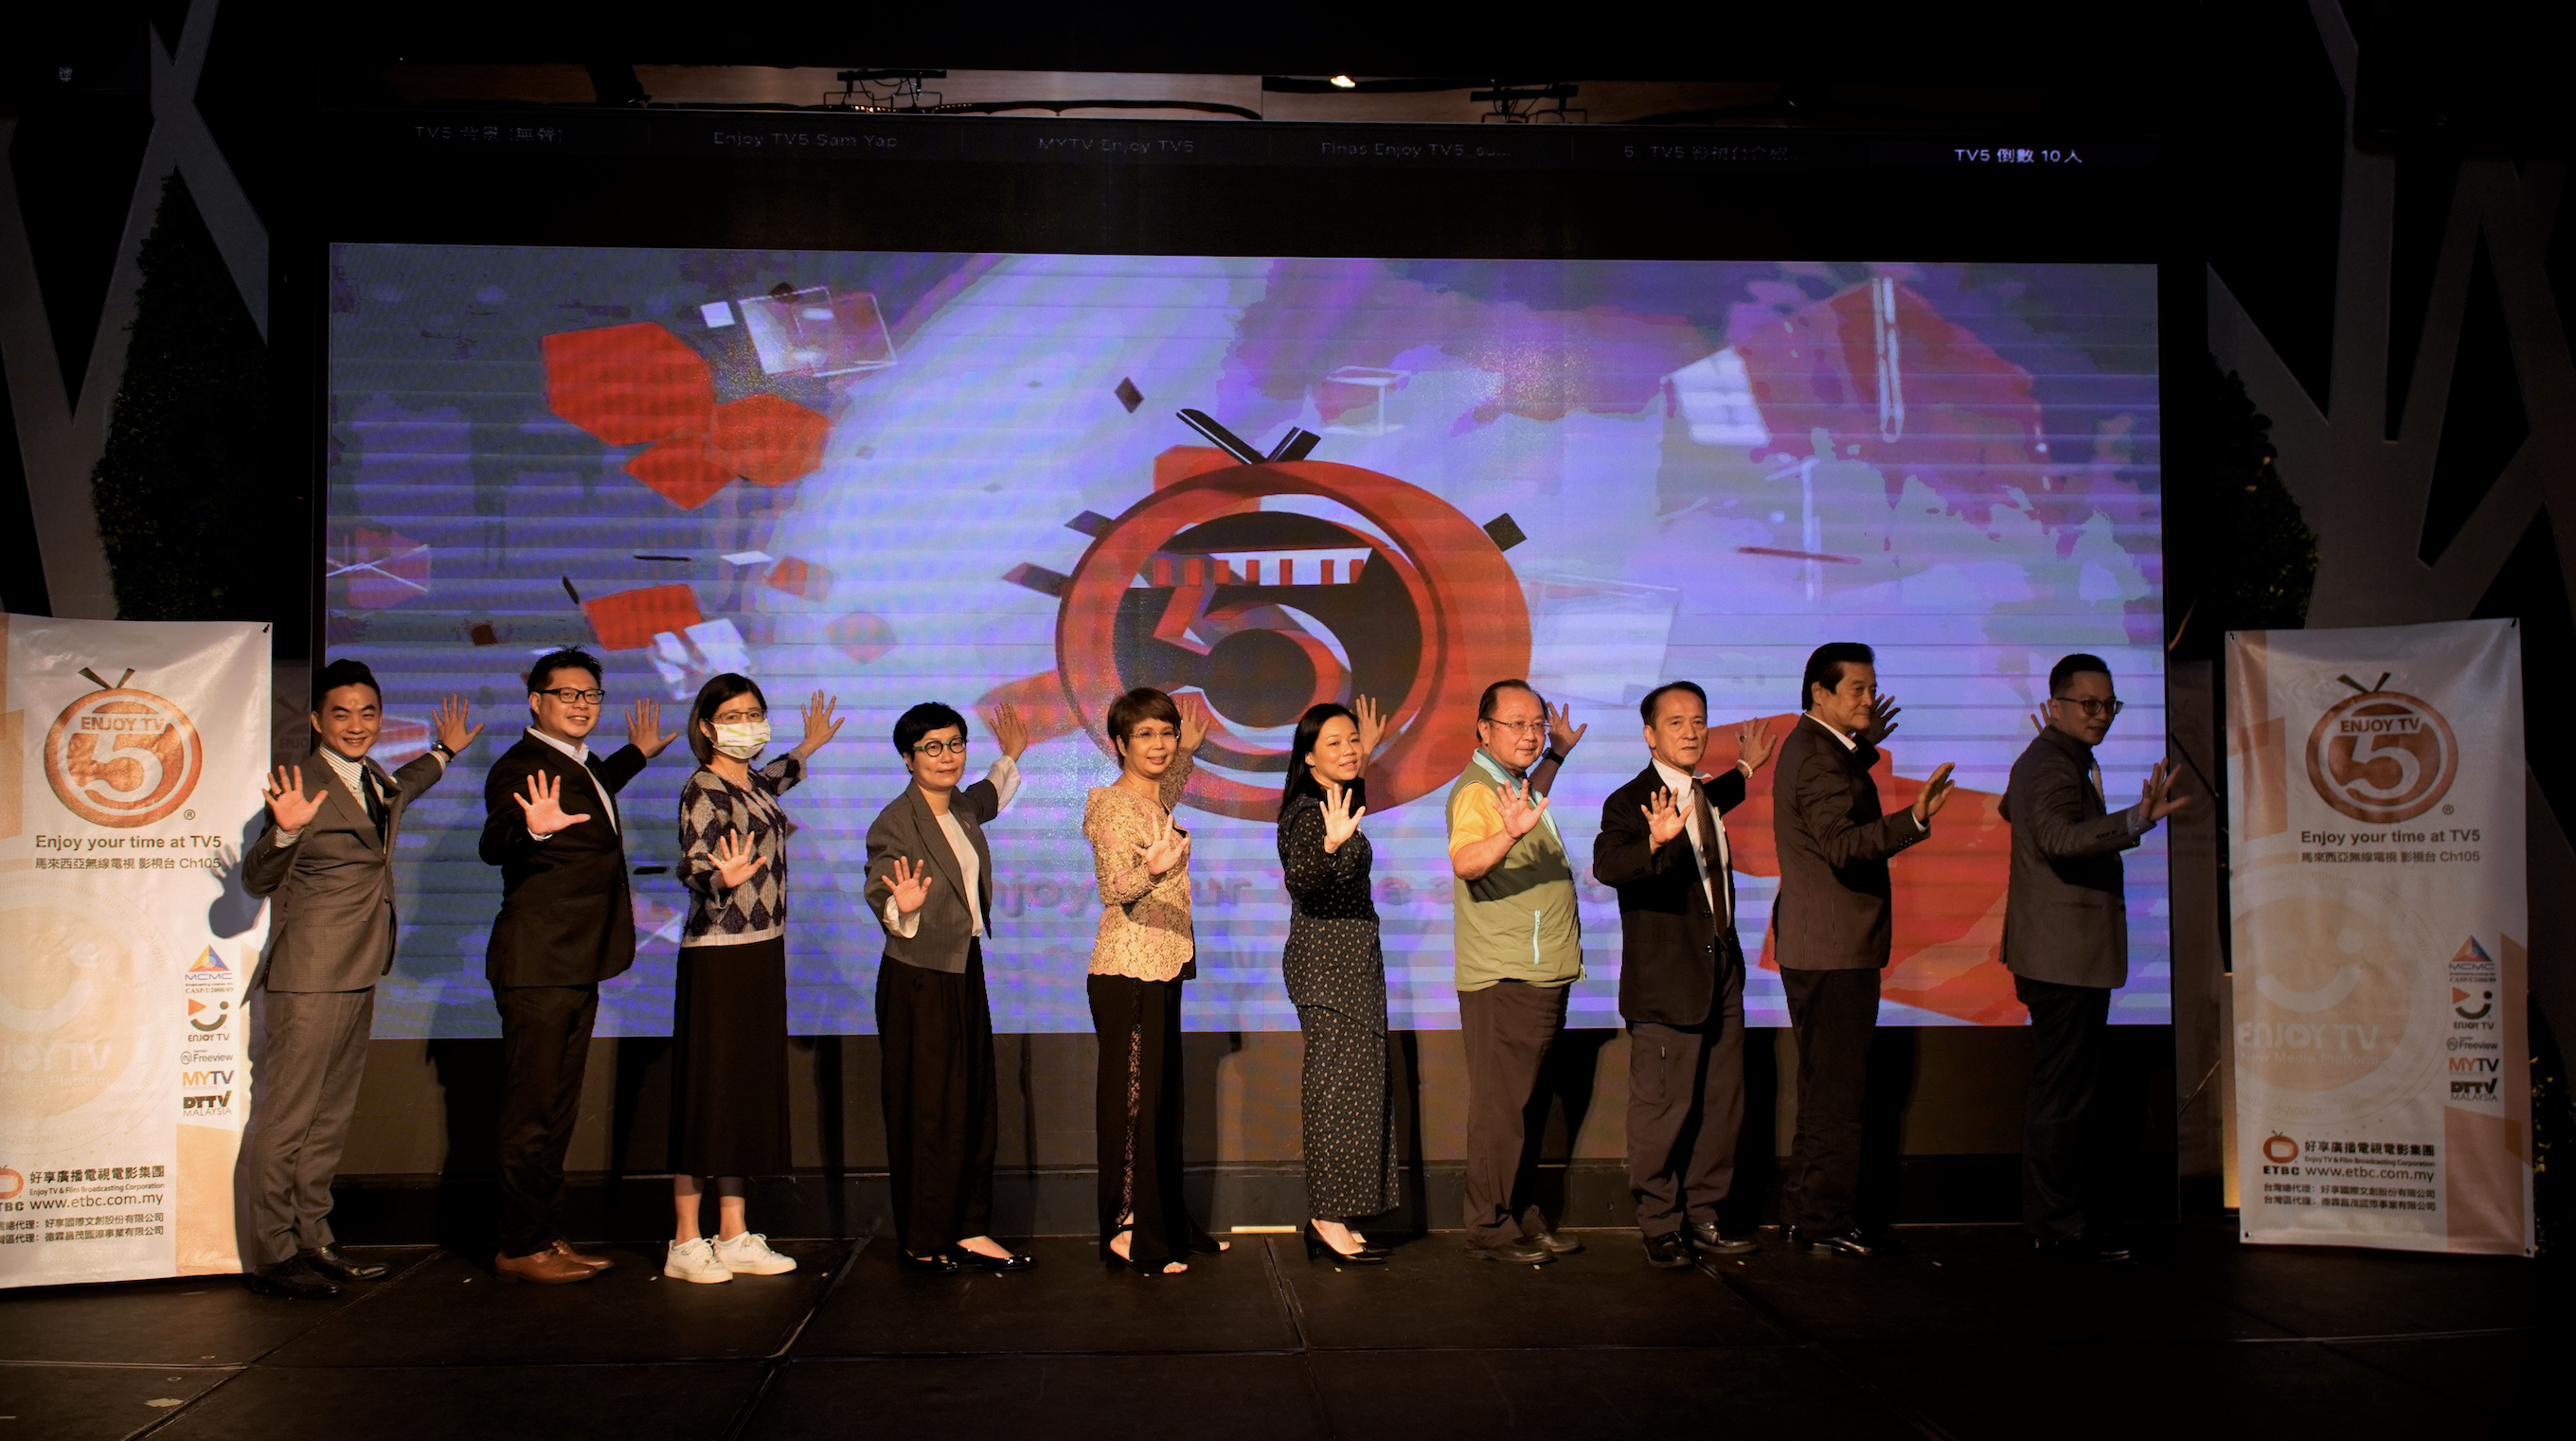 (新聞時事)讓世界看到台灣《 大馬 TV5影視台》在影視文化與商業的搭配下，展現MIT台灣影視文化的實力及品牌的優勢 封面照片